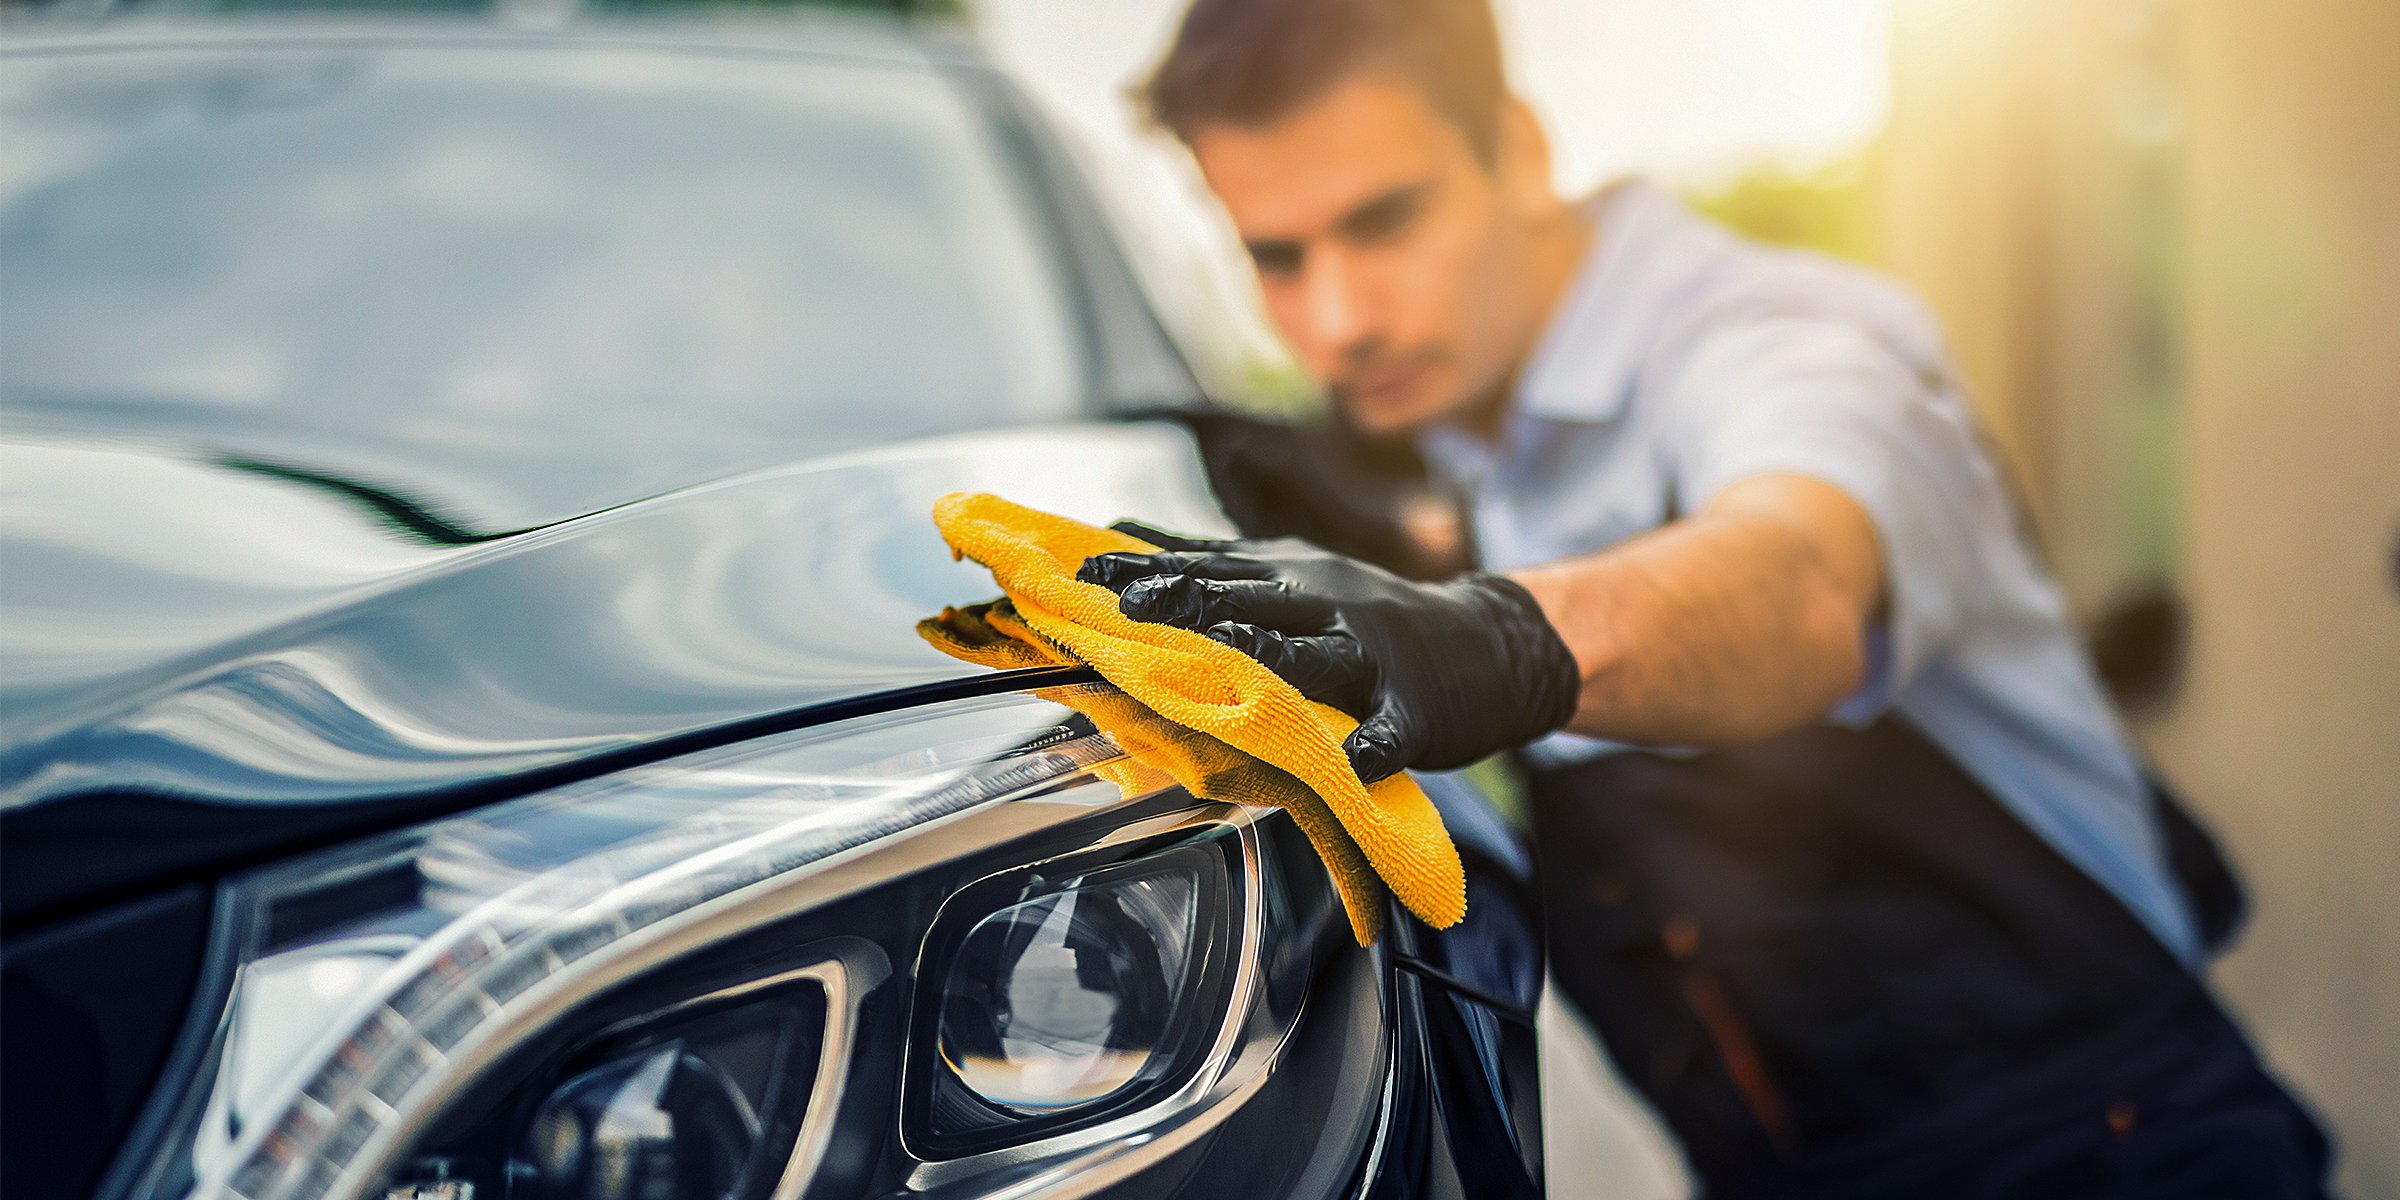 A man polishing a car | Source: Shutterstock